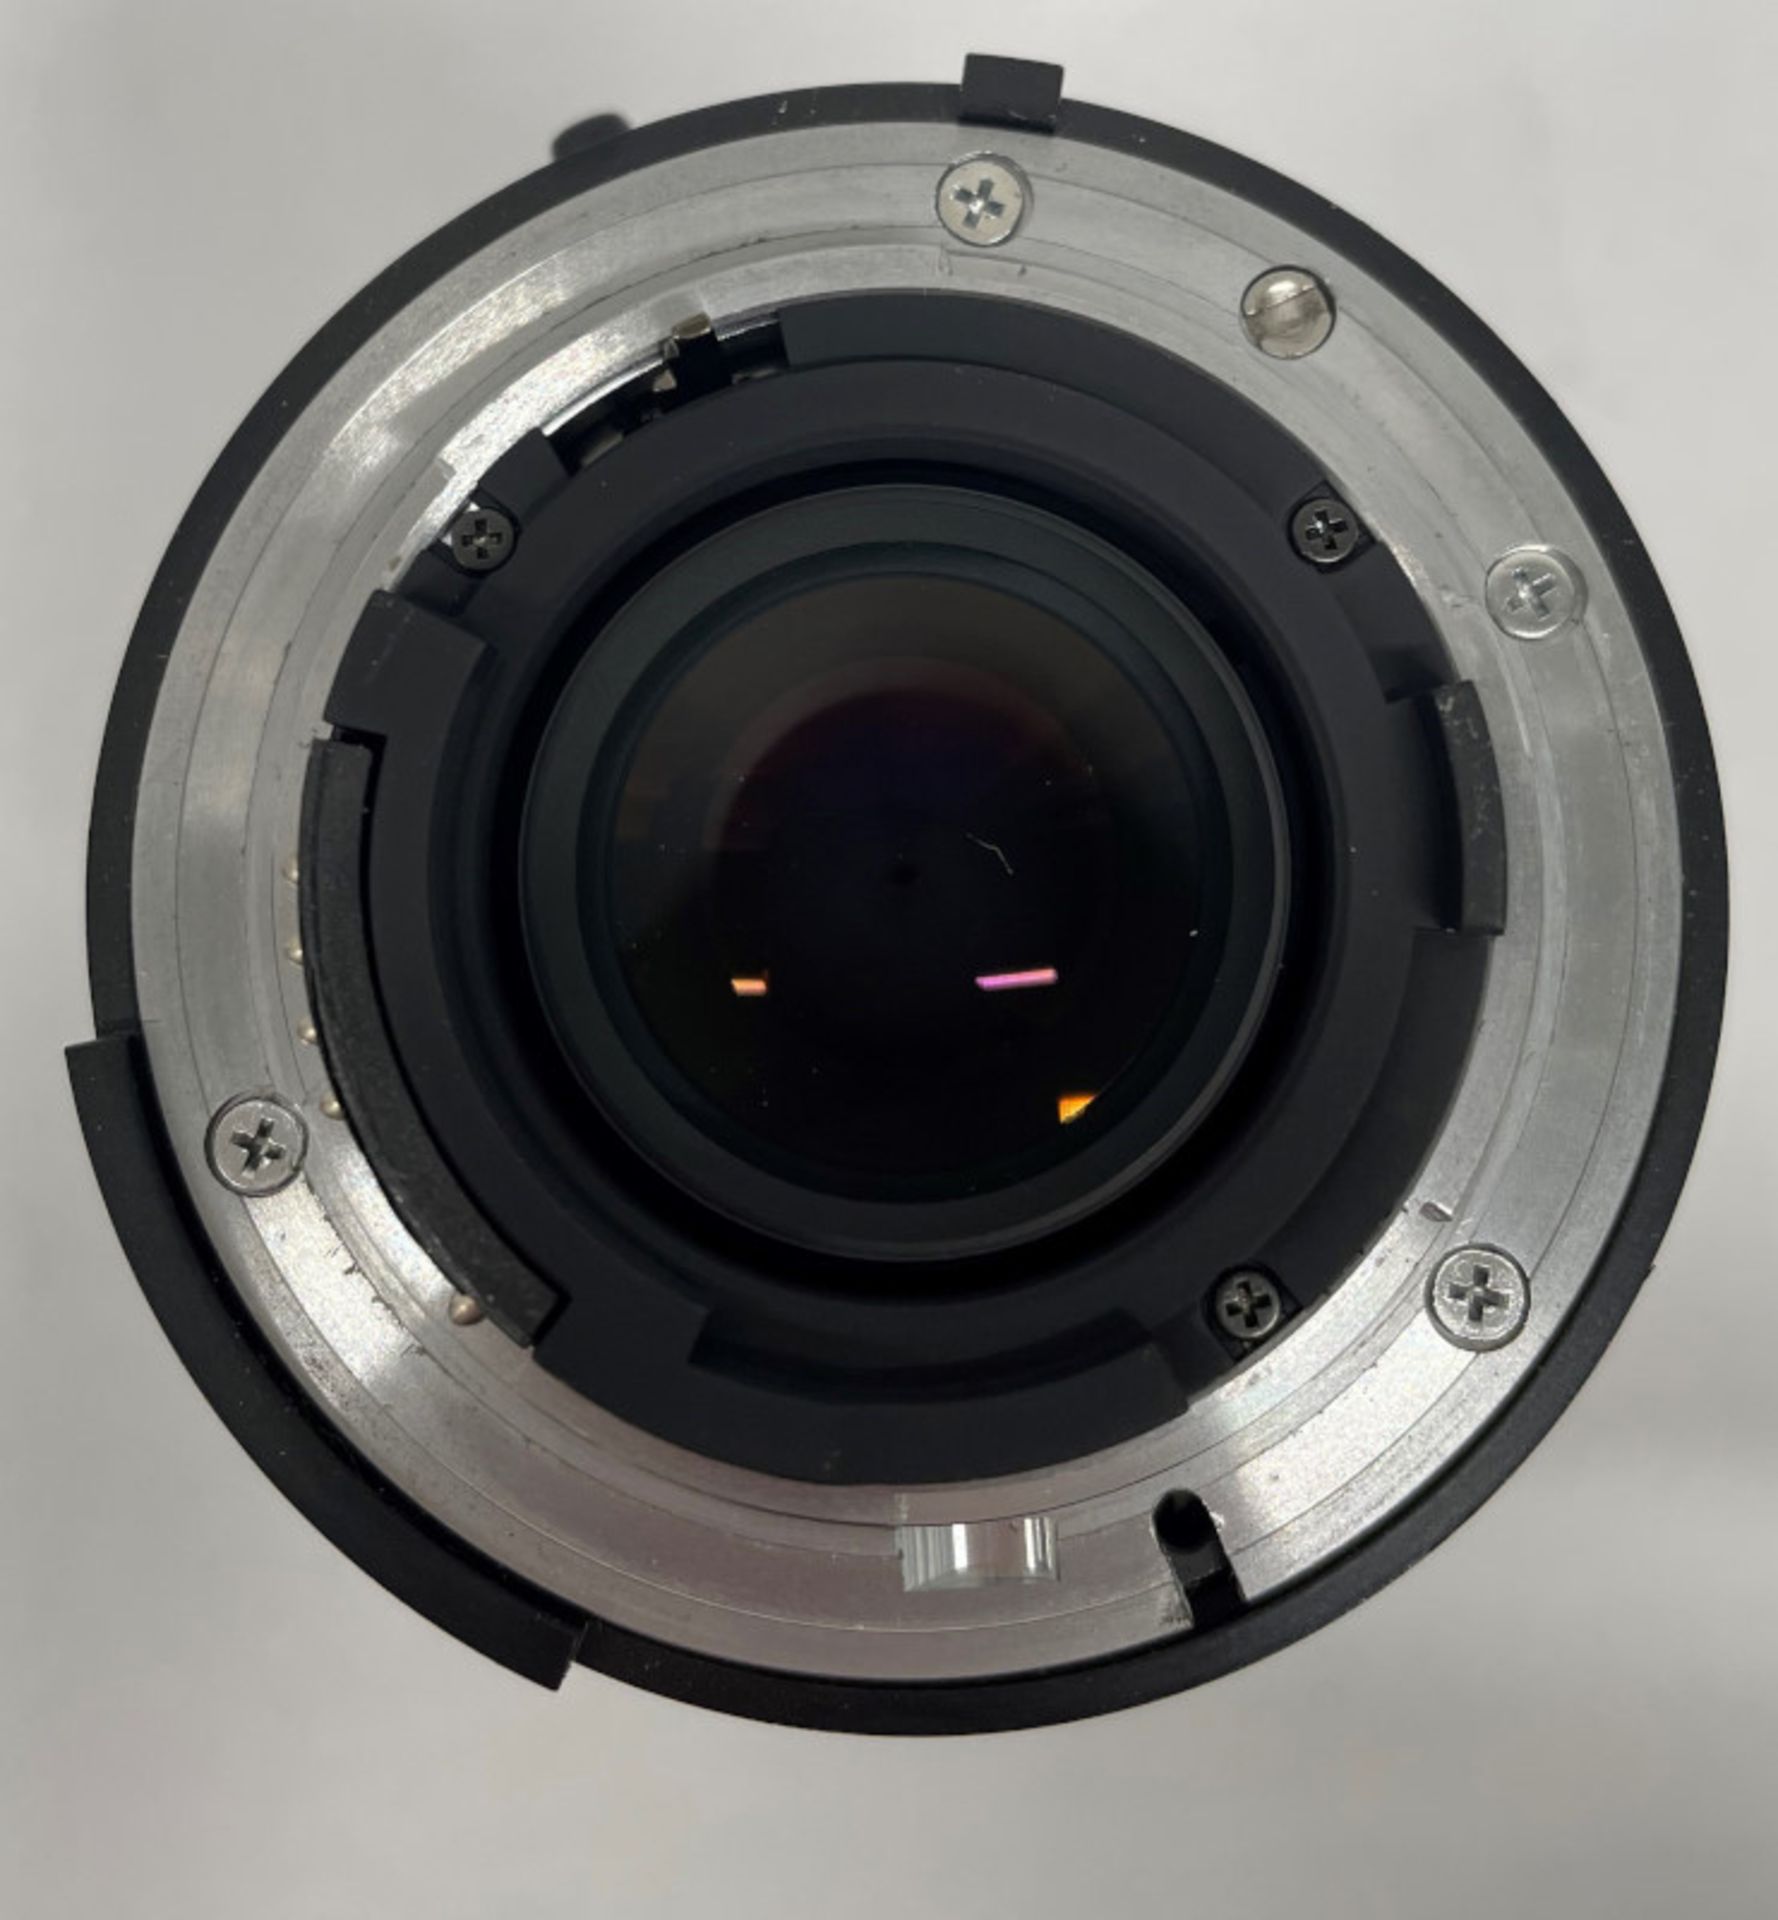 Nikon AF Nikkor 70-210mm - 1:4-5.6 Lens - Serial No. 2432176 with HOYA 62mm UV(O) Filter - Image 6 of 7